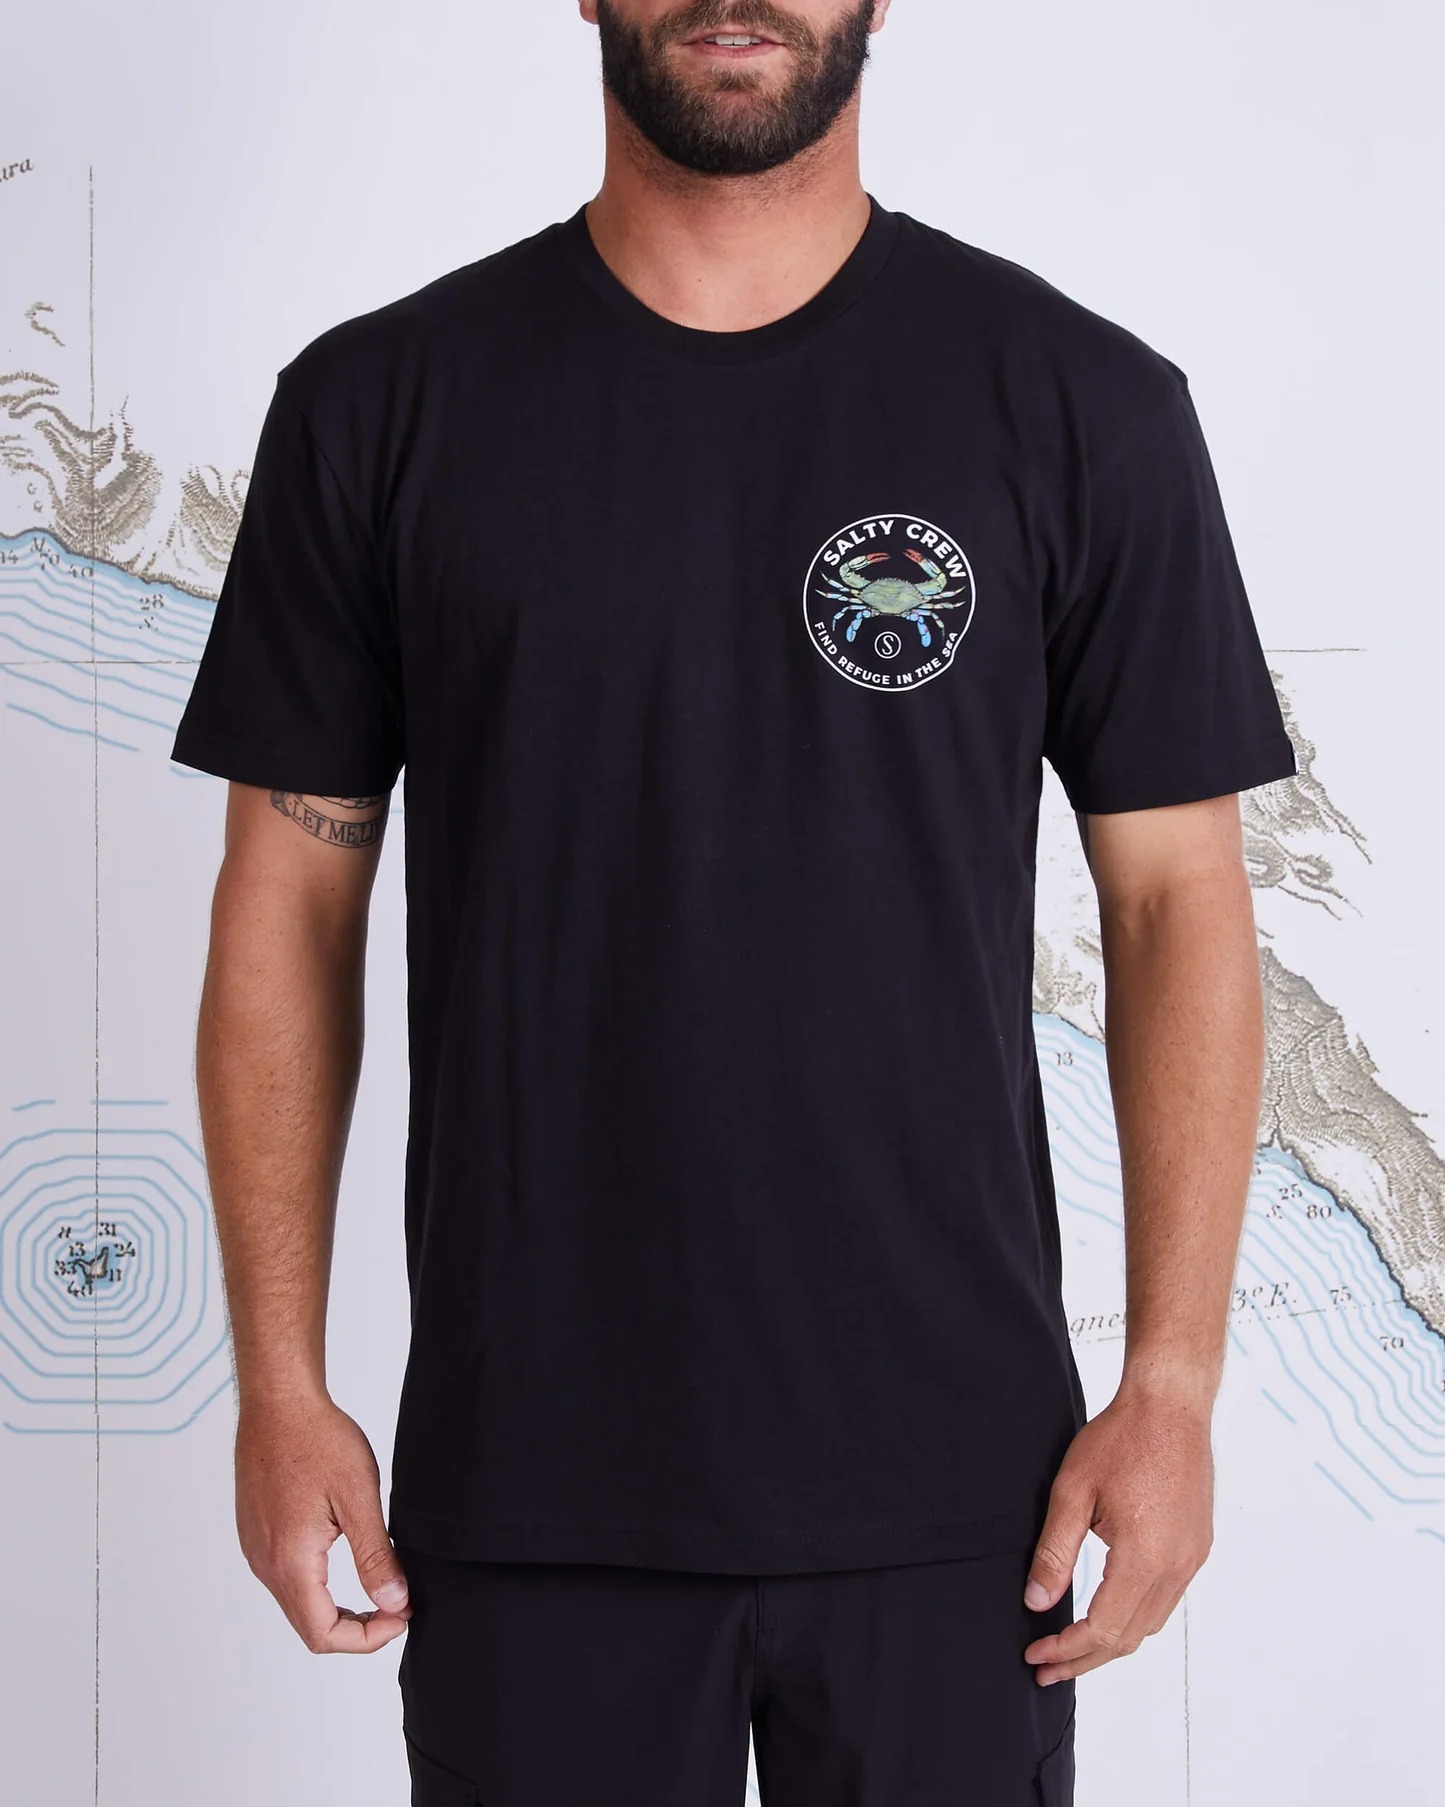 Salty Crew Blue Crabber T-Shirt blk